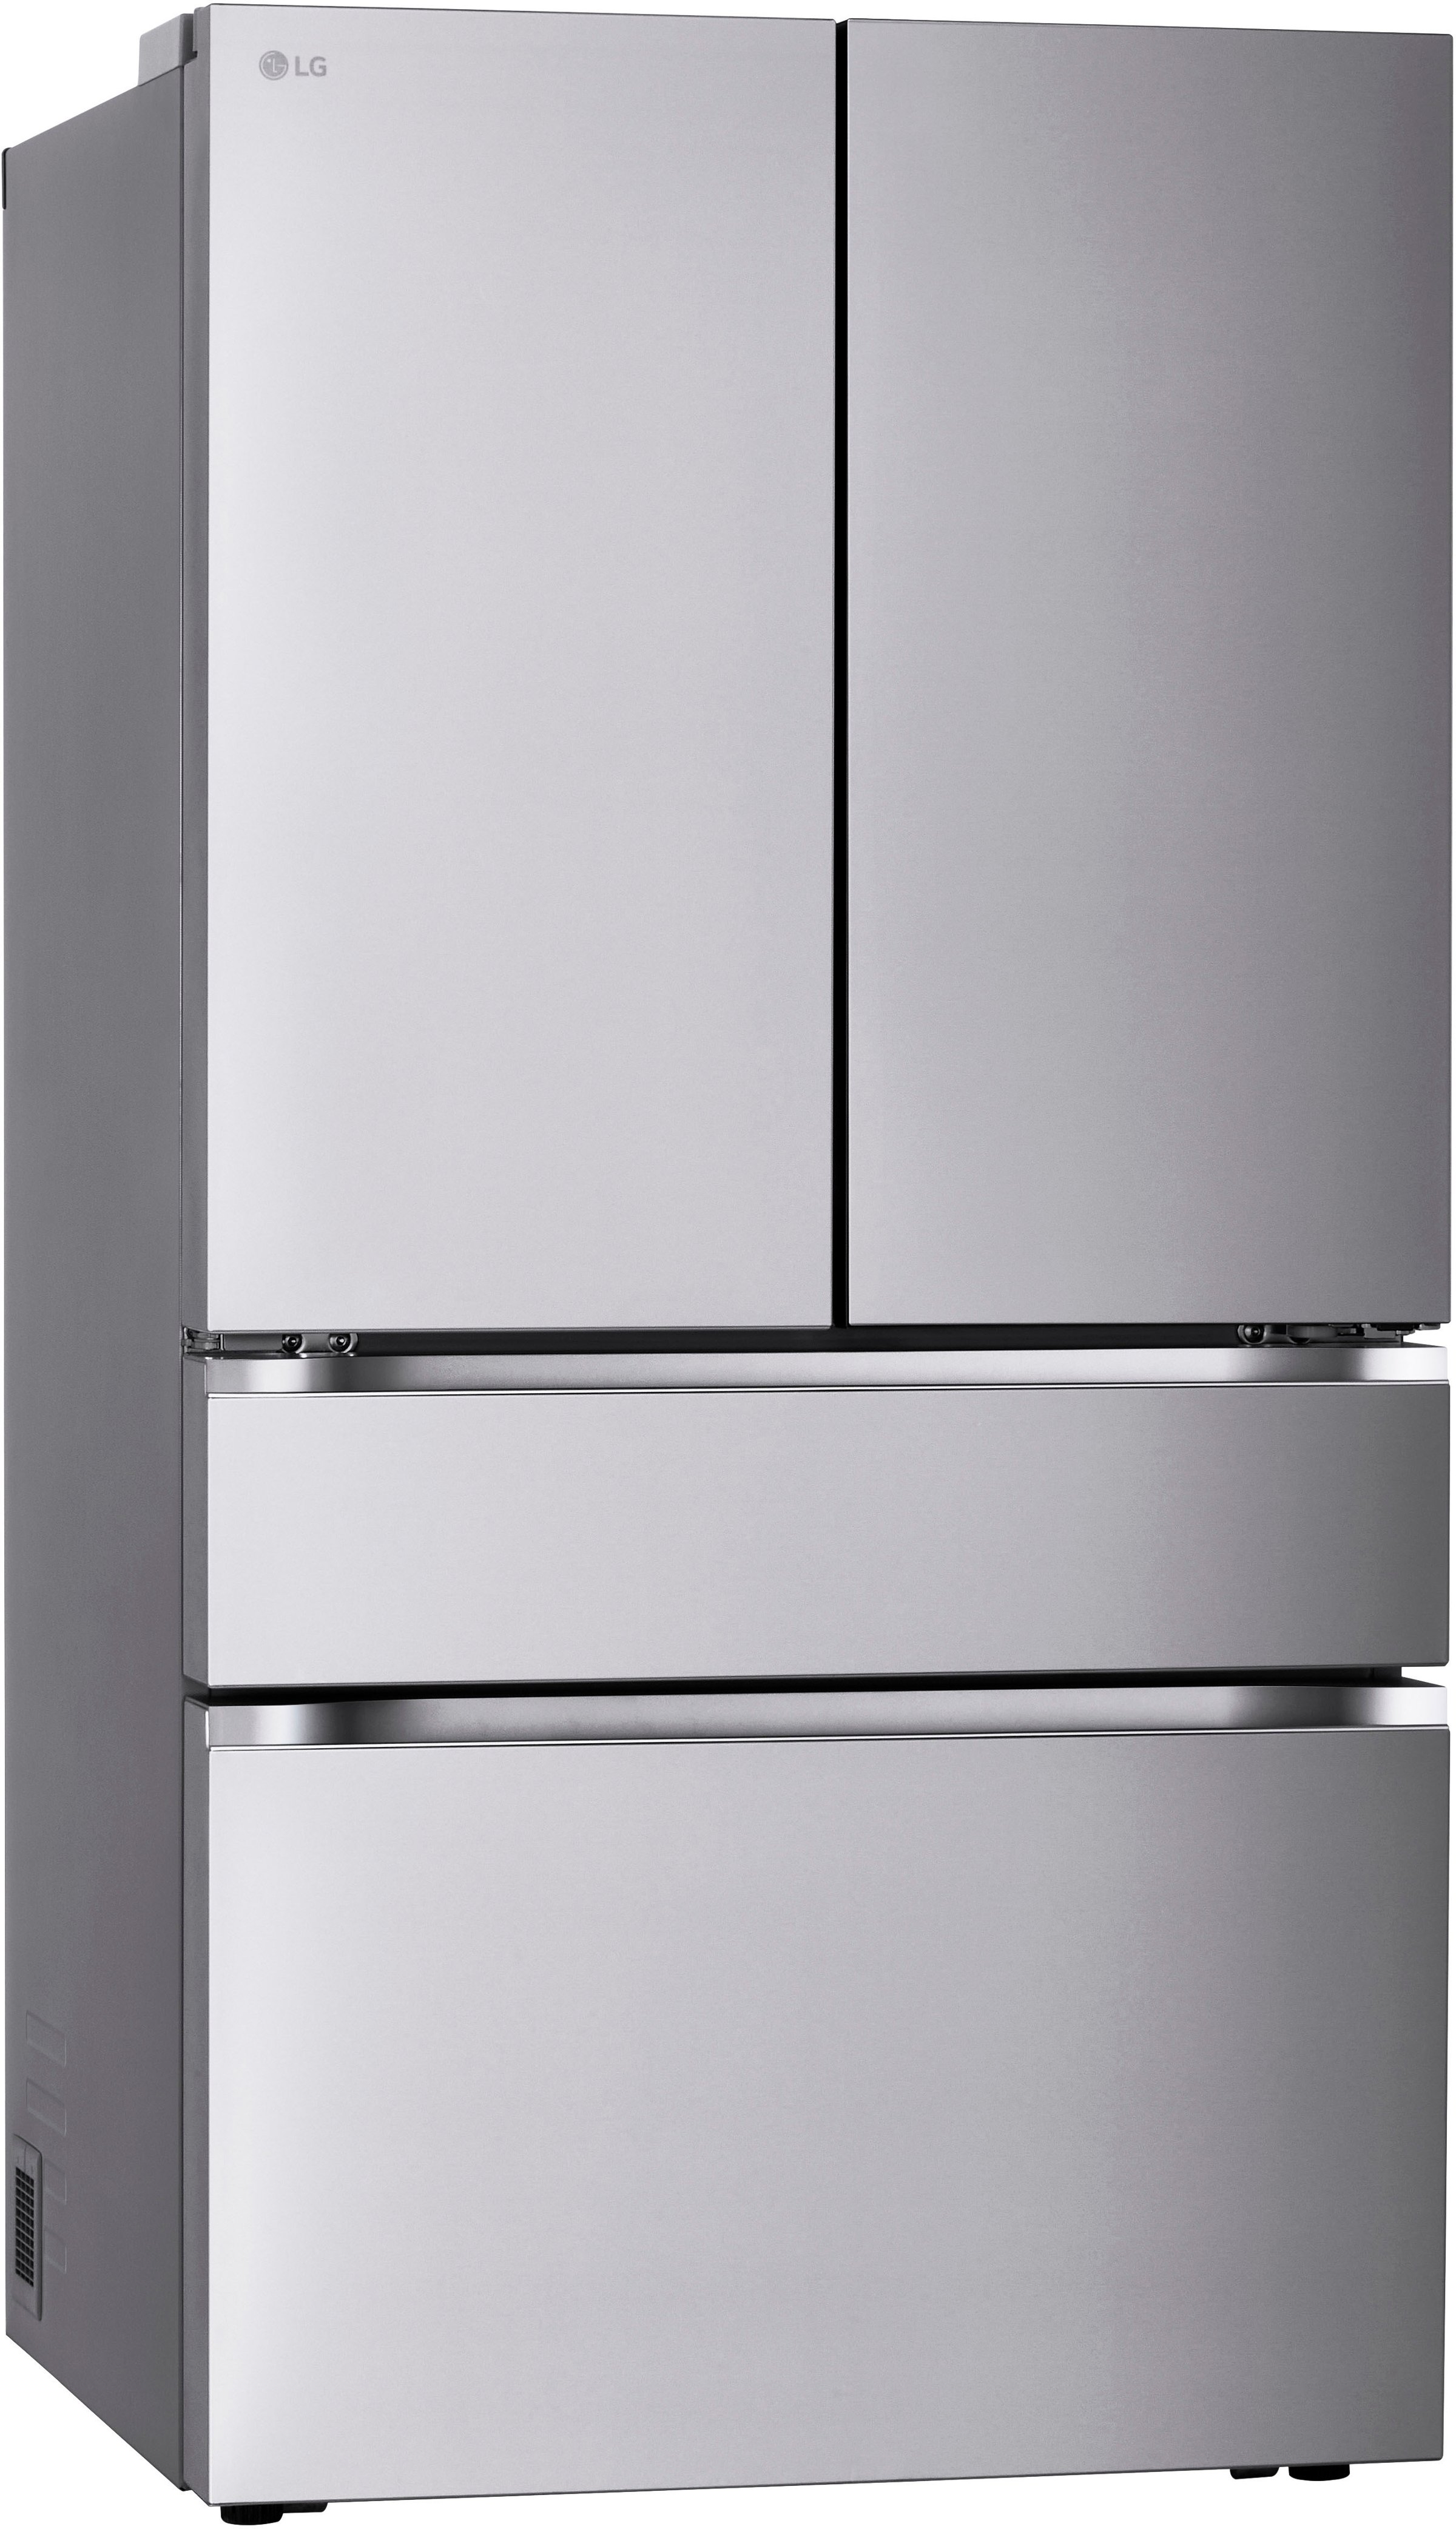 LG Standard Depth MAX Full-Convert Drawer 28.6-cu ft 4-Door Smart French  Door Refrigerator with Dual Ice Maker (Fingerprint Resistant Steel) ENERGY  STAR in the French Door Refrigerators department at